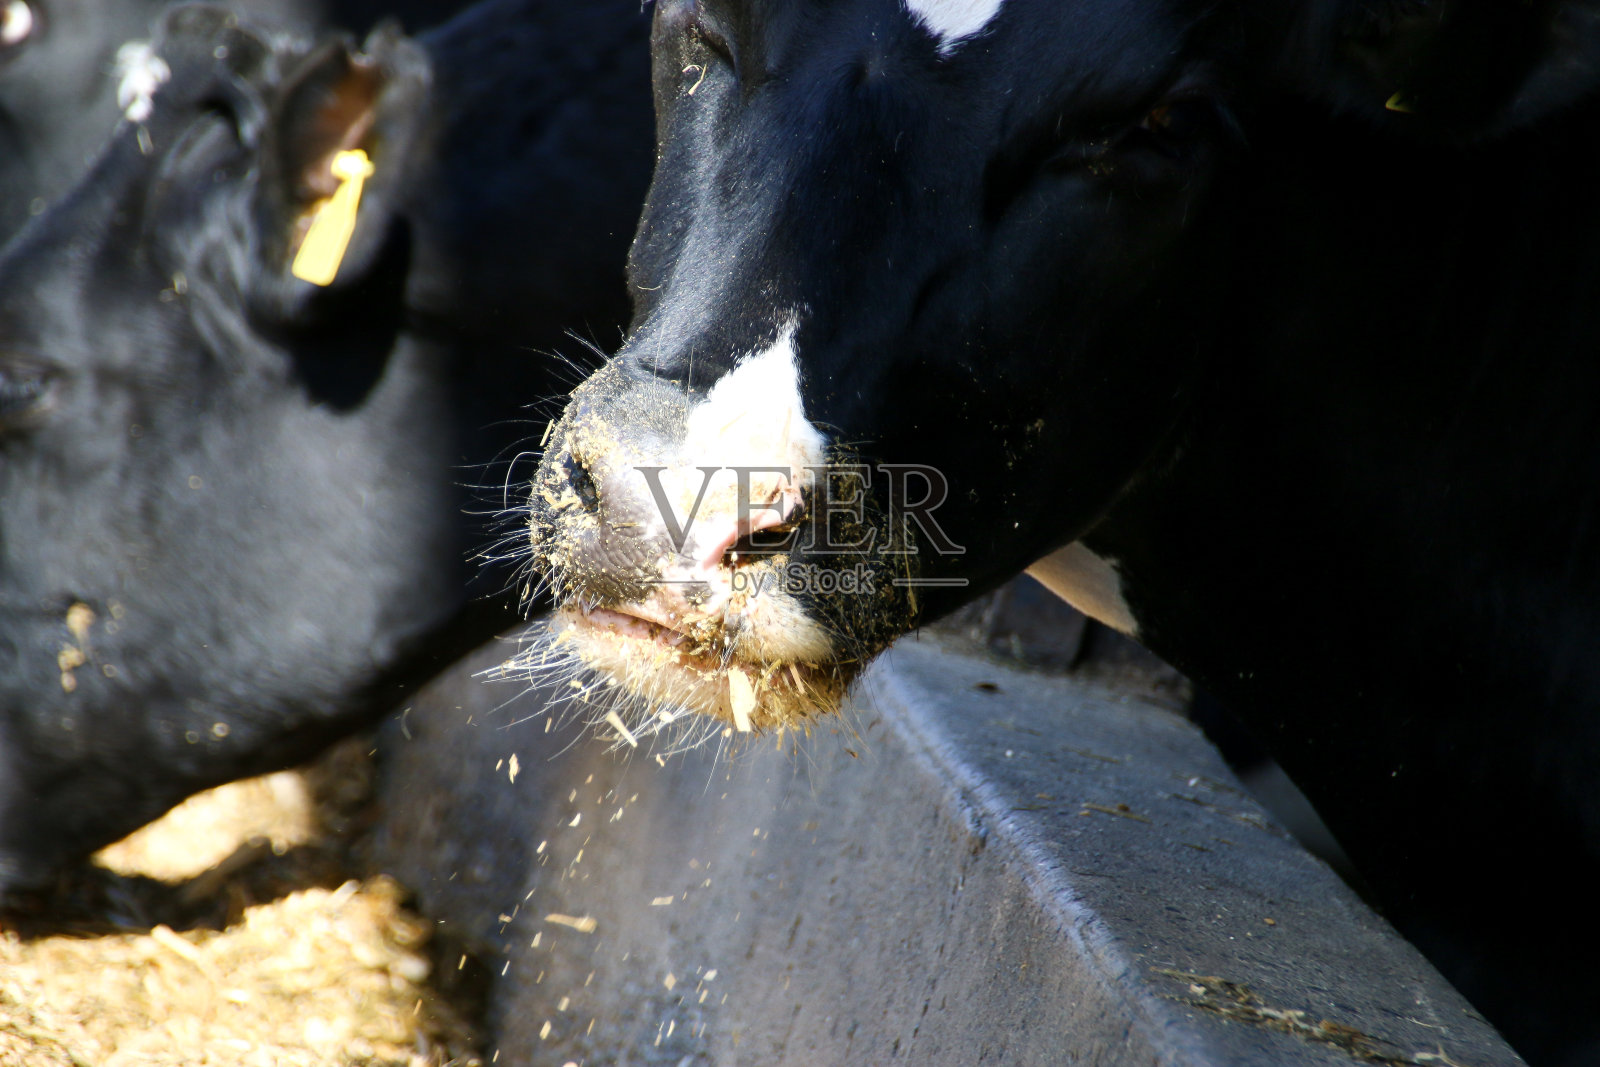 吃草的奶牛照片摄影图片